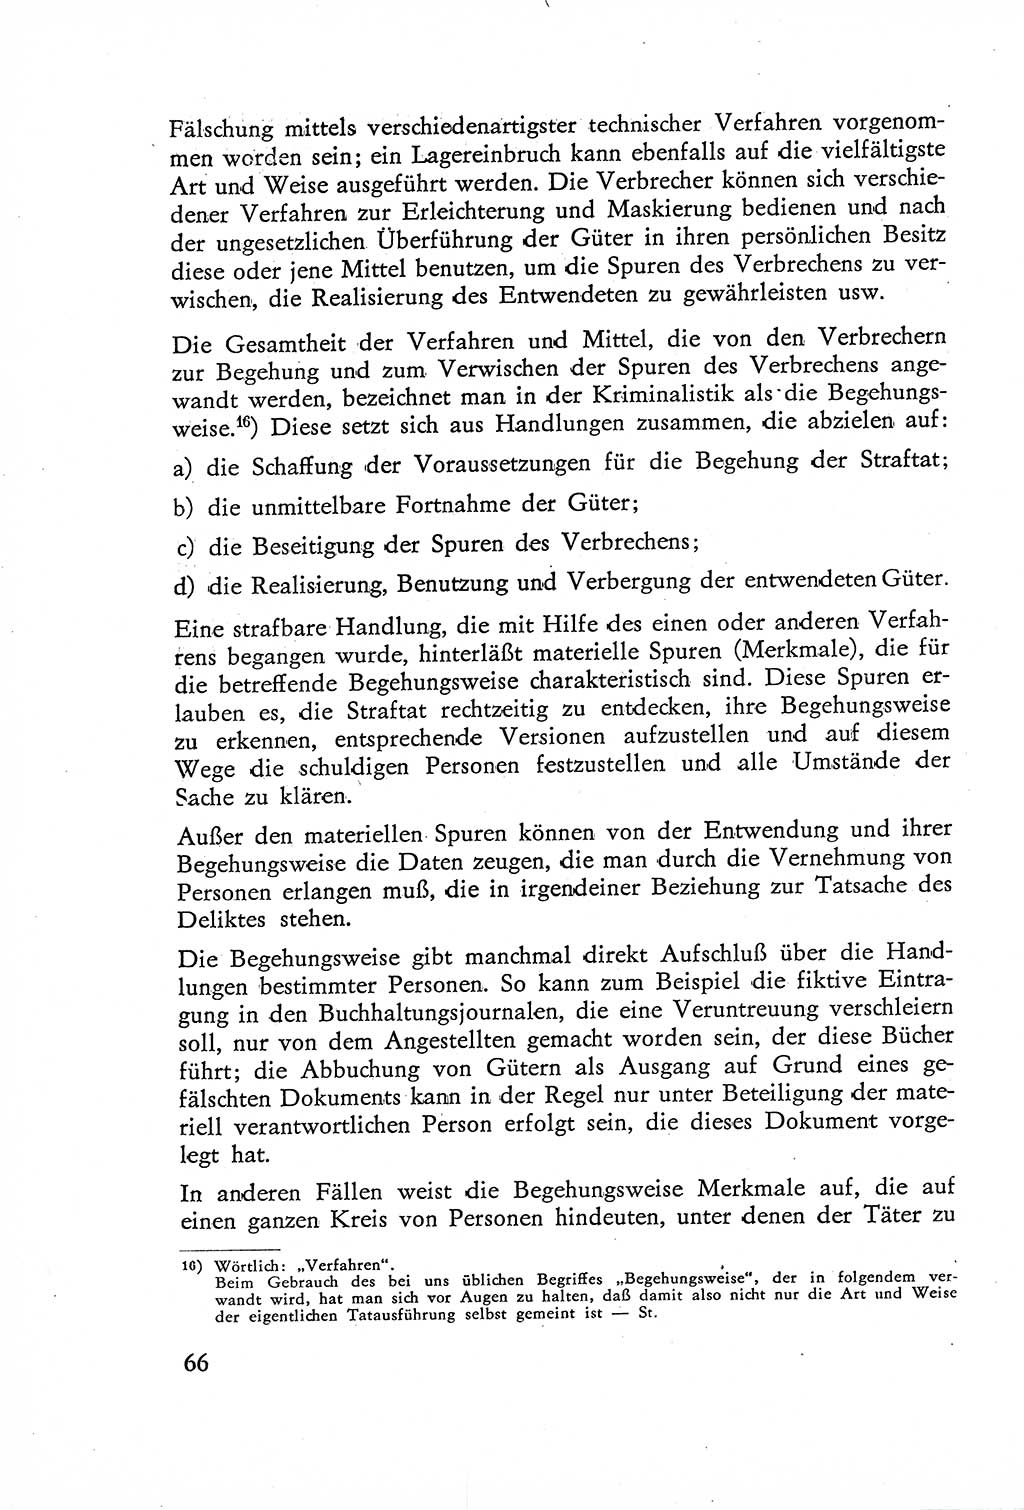 Die Untersuchung einzelner Verbrechensarten [Deutsche Demokratische Republik (DDR)] 1960, Seite 66 (Unters. Verbr.-Art. DDR 1960, S. 66)